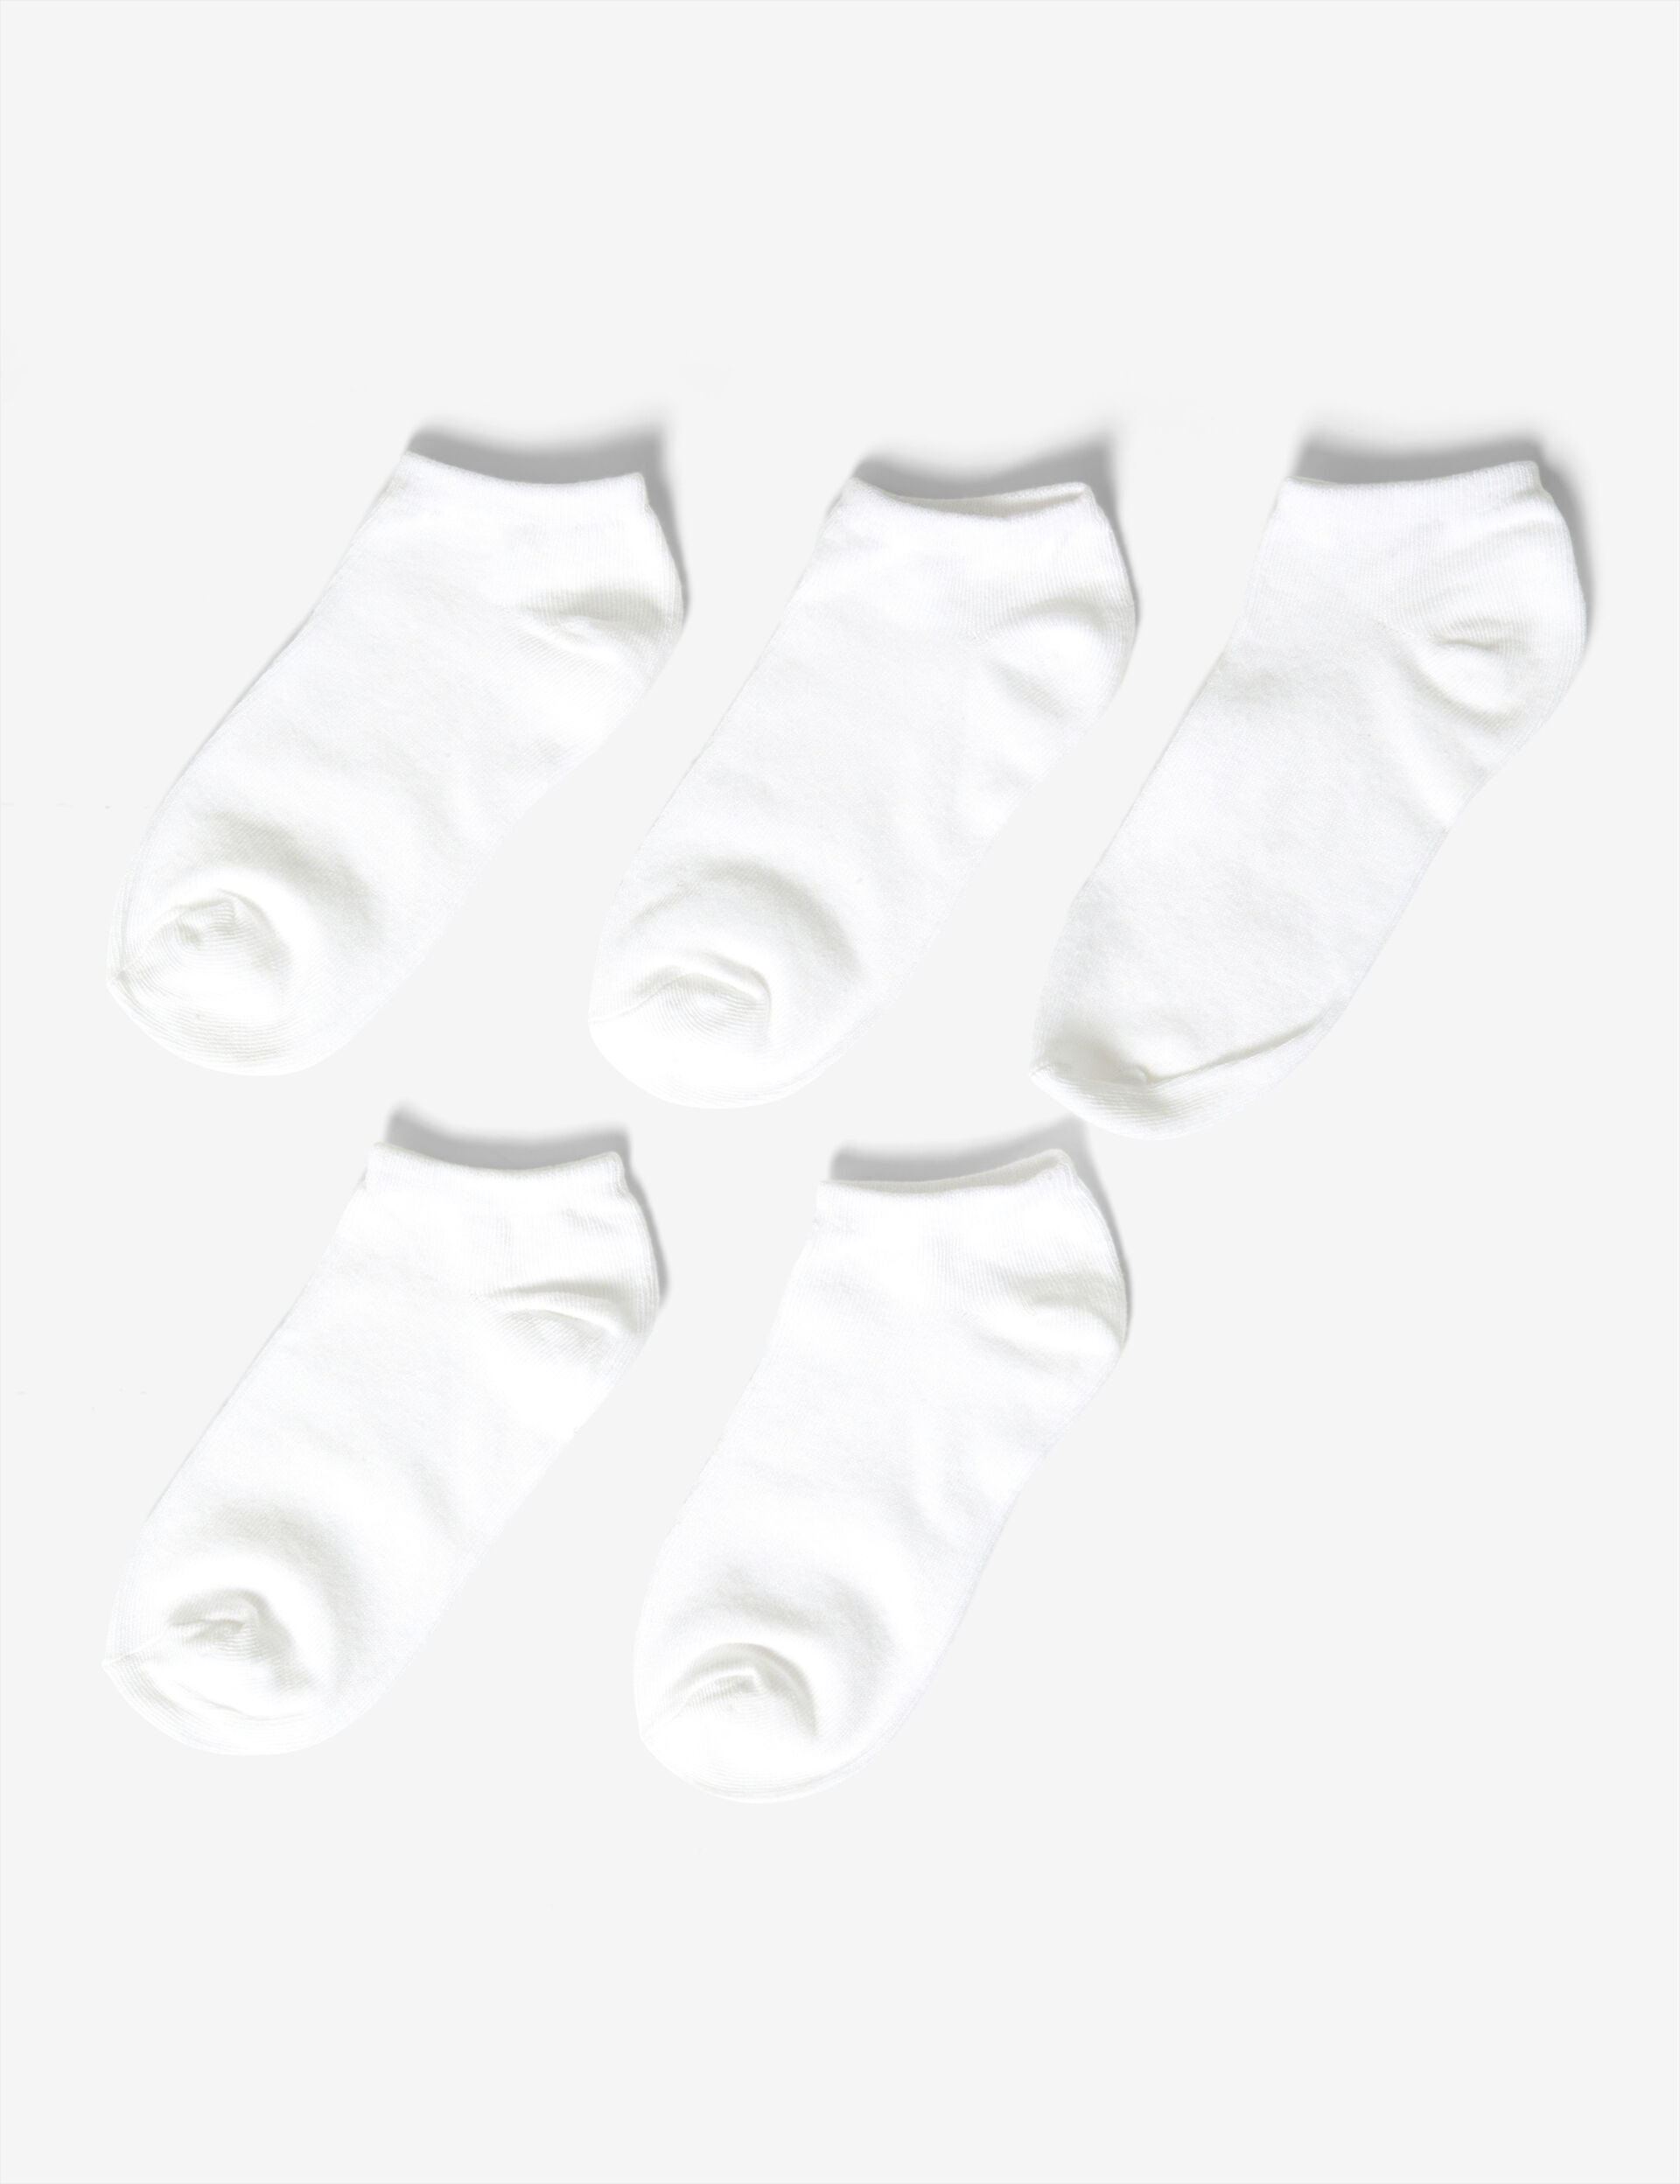 Basic socks